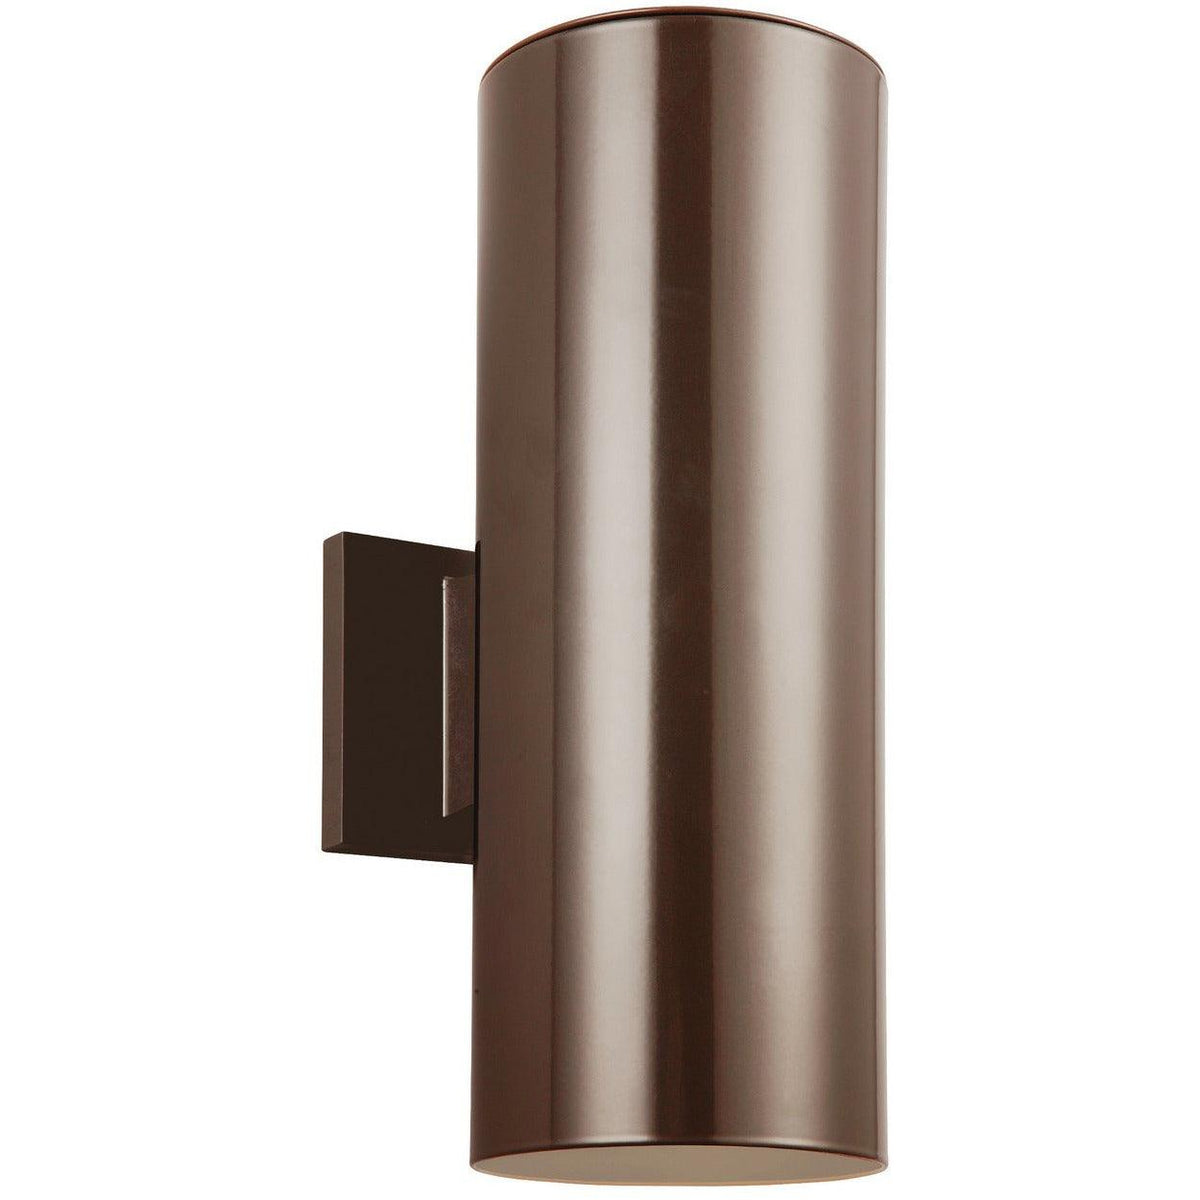 Generation Lighting - Outdoor Cylinders Outdoor Wall Lantern - 8313901EN3-10 | Montreal Lighting & Hardware